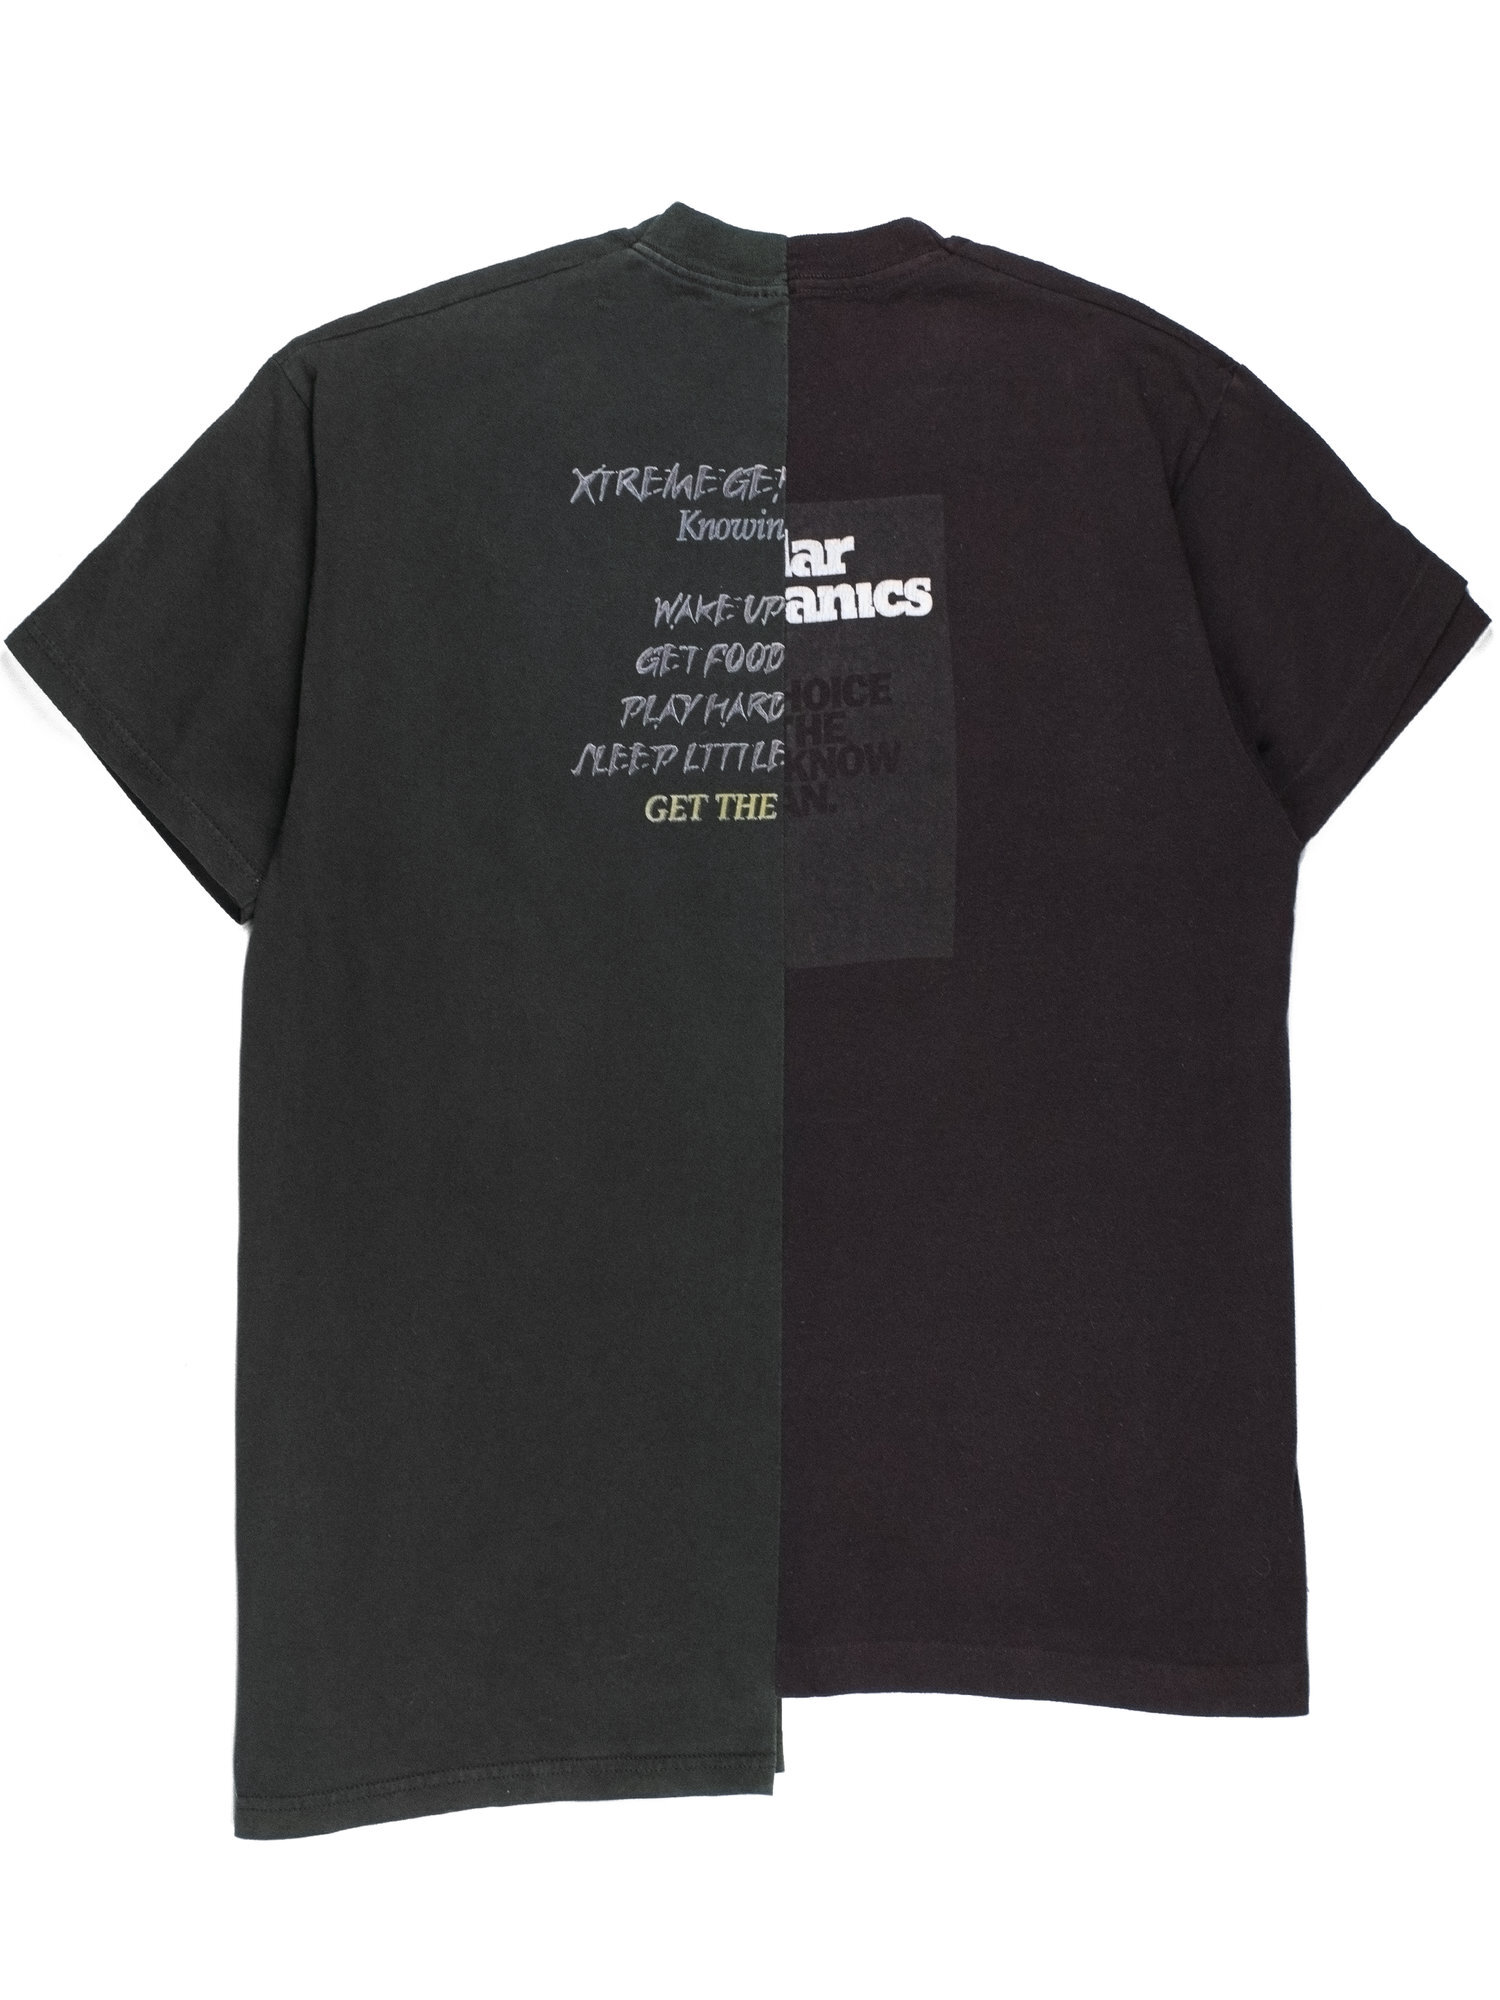 Martin Margiela AW Artisanal Split T Shirt — Middleman Store